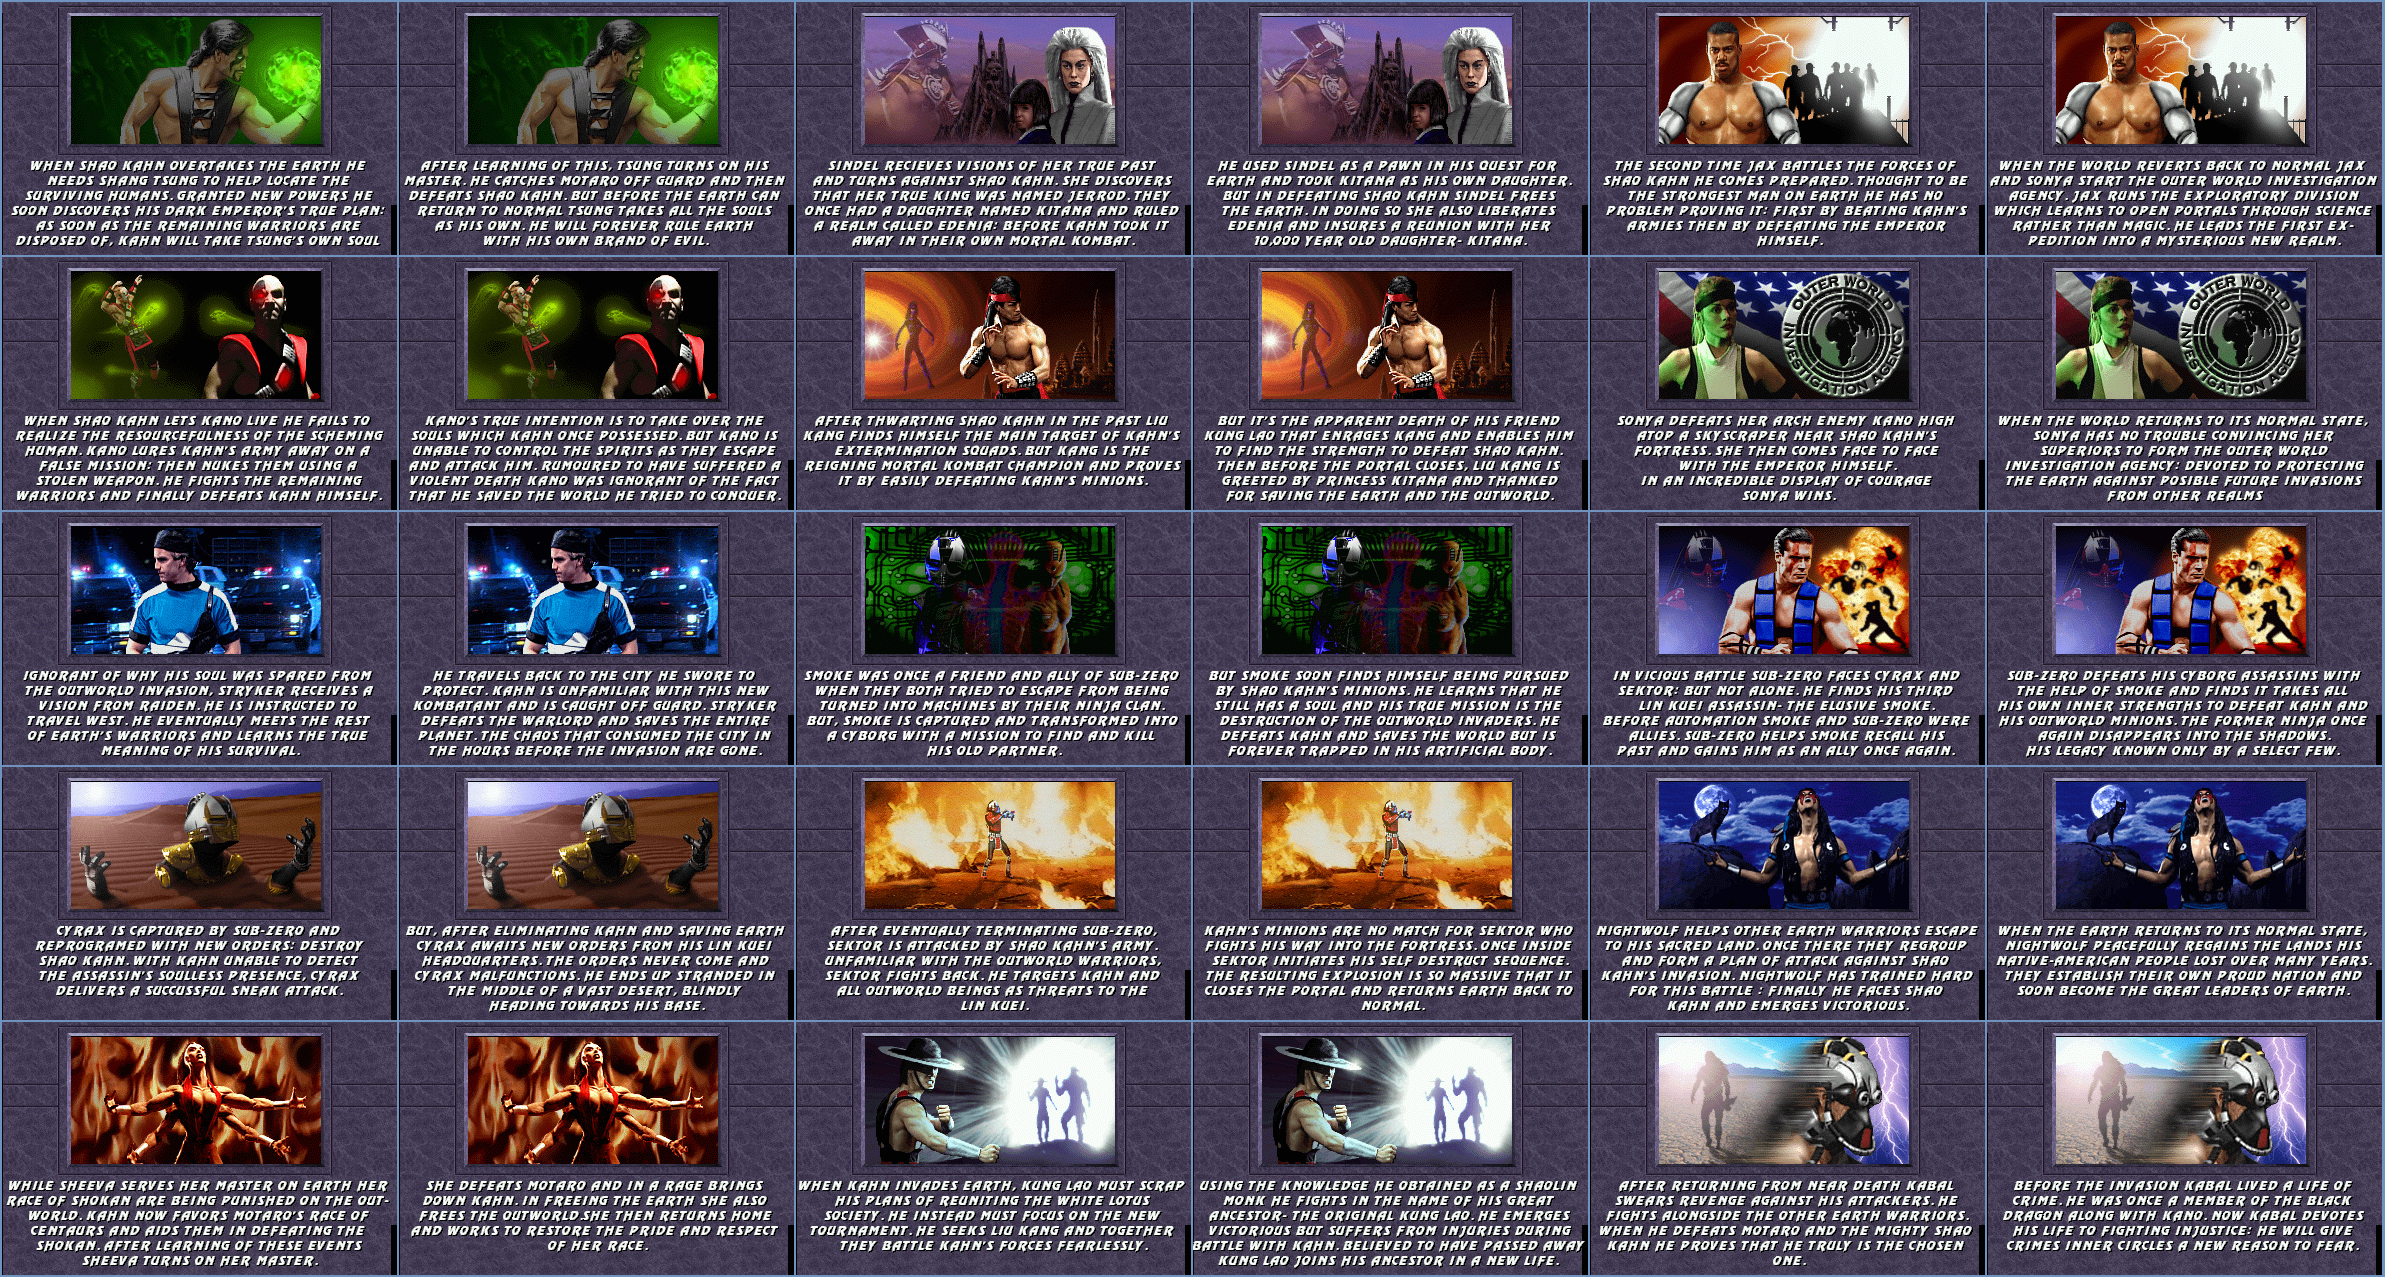 Mortal Kombat 3 - Character Endings